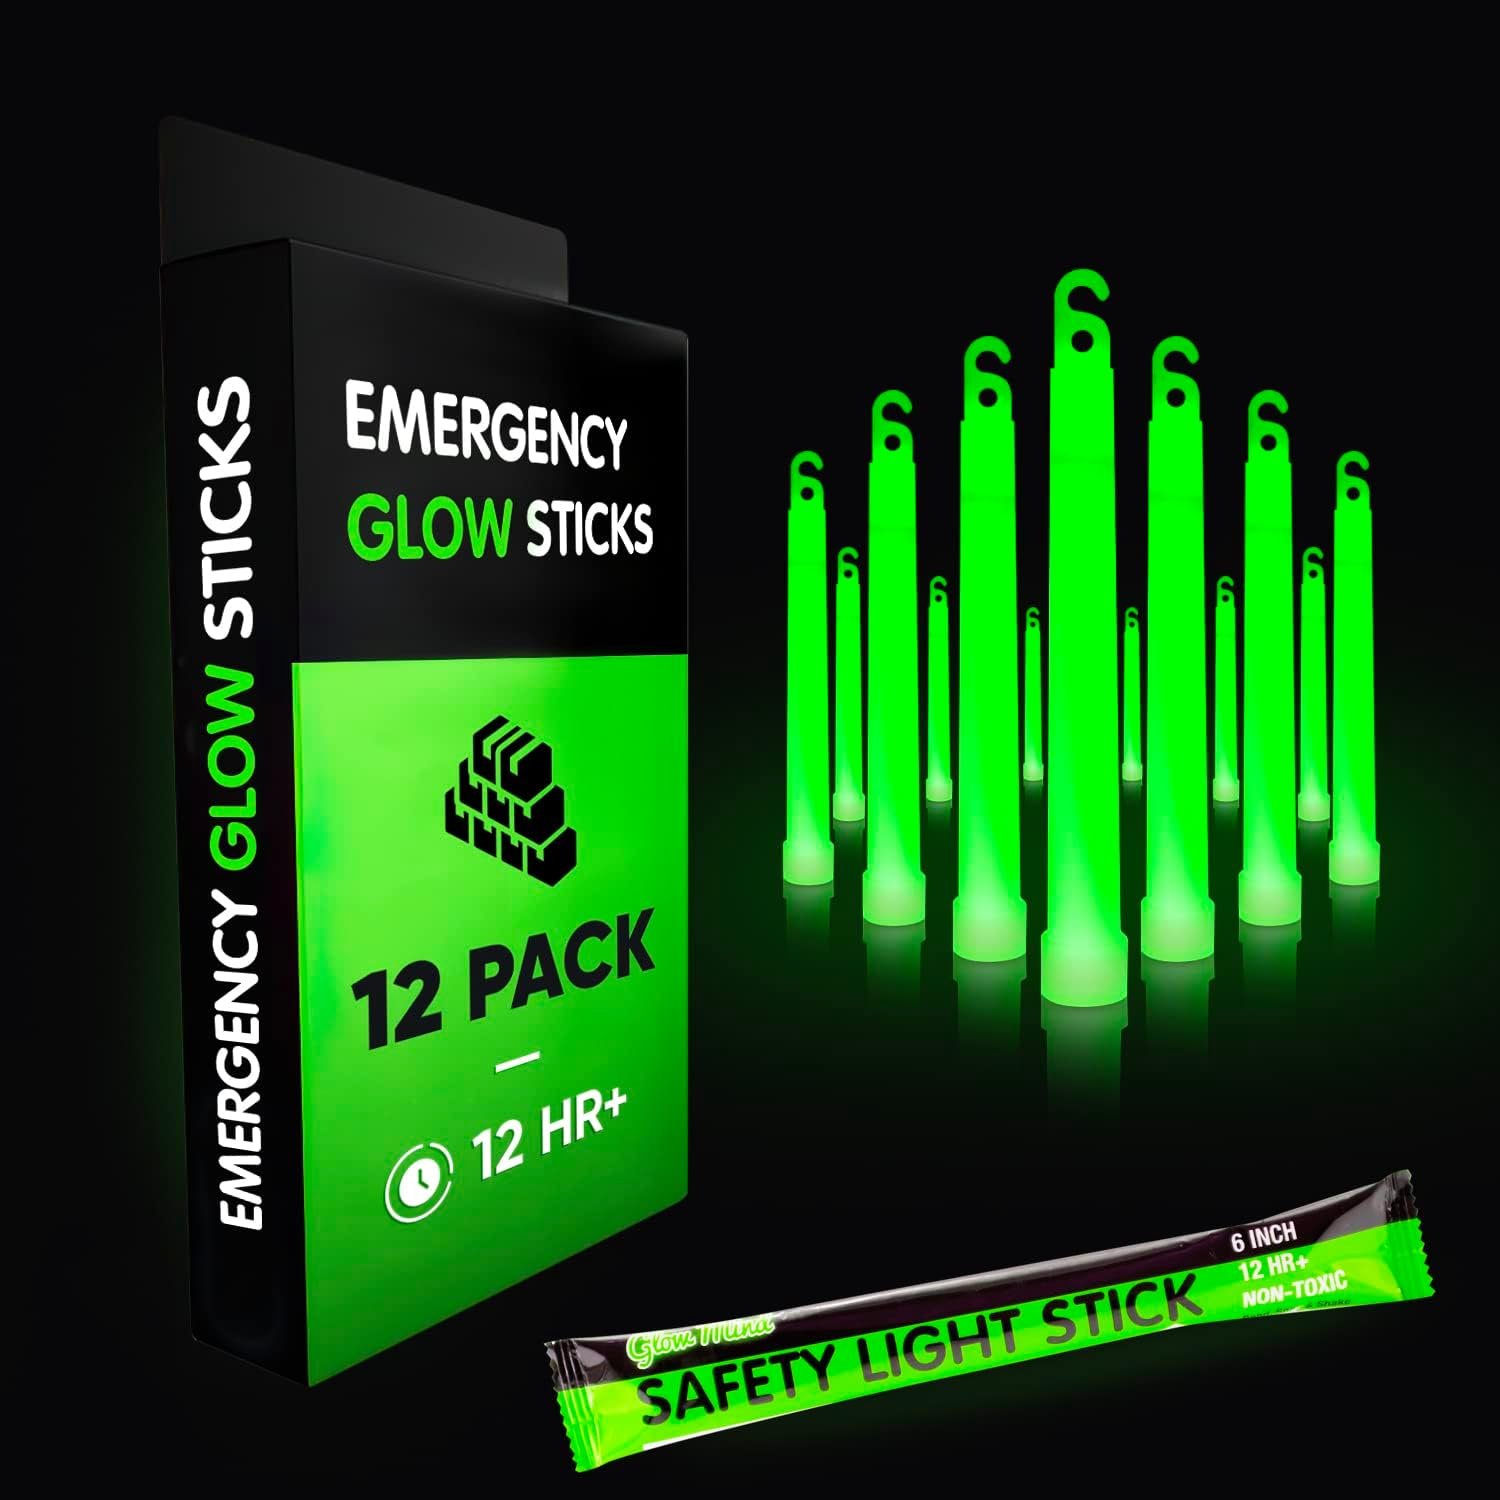 Emergency Glow Sticks Review